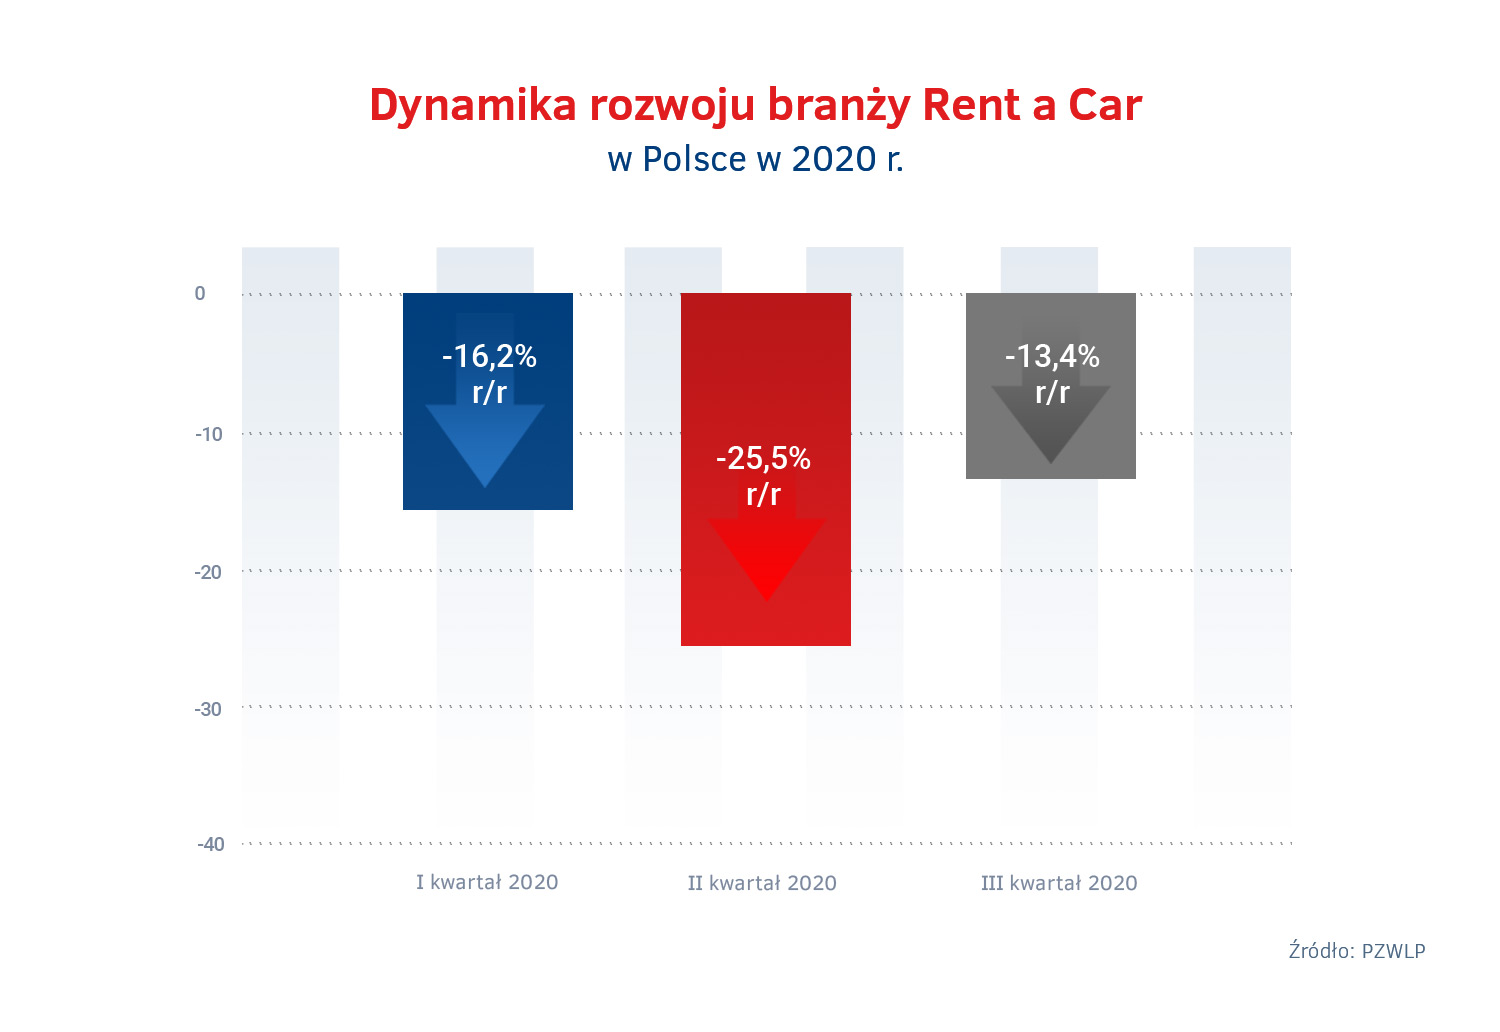 Dynamiki rozwoju branży Rent a Car w 2020